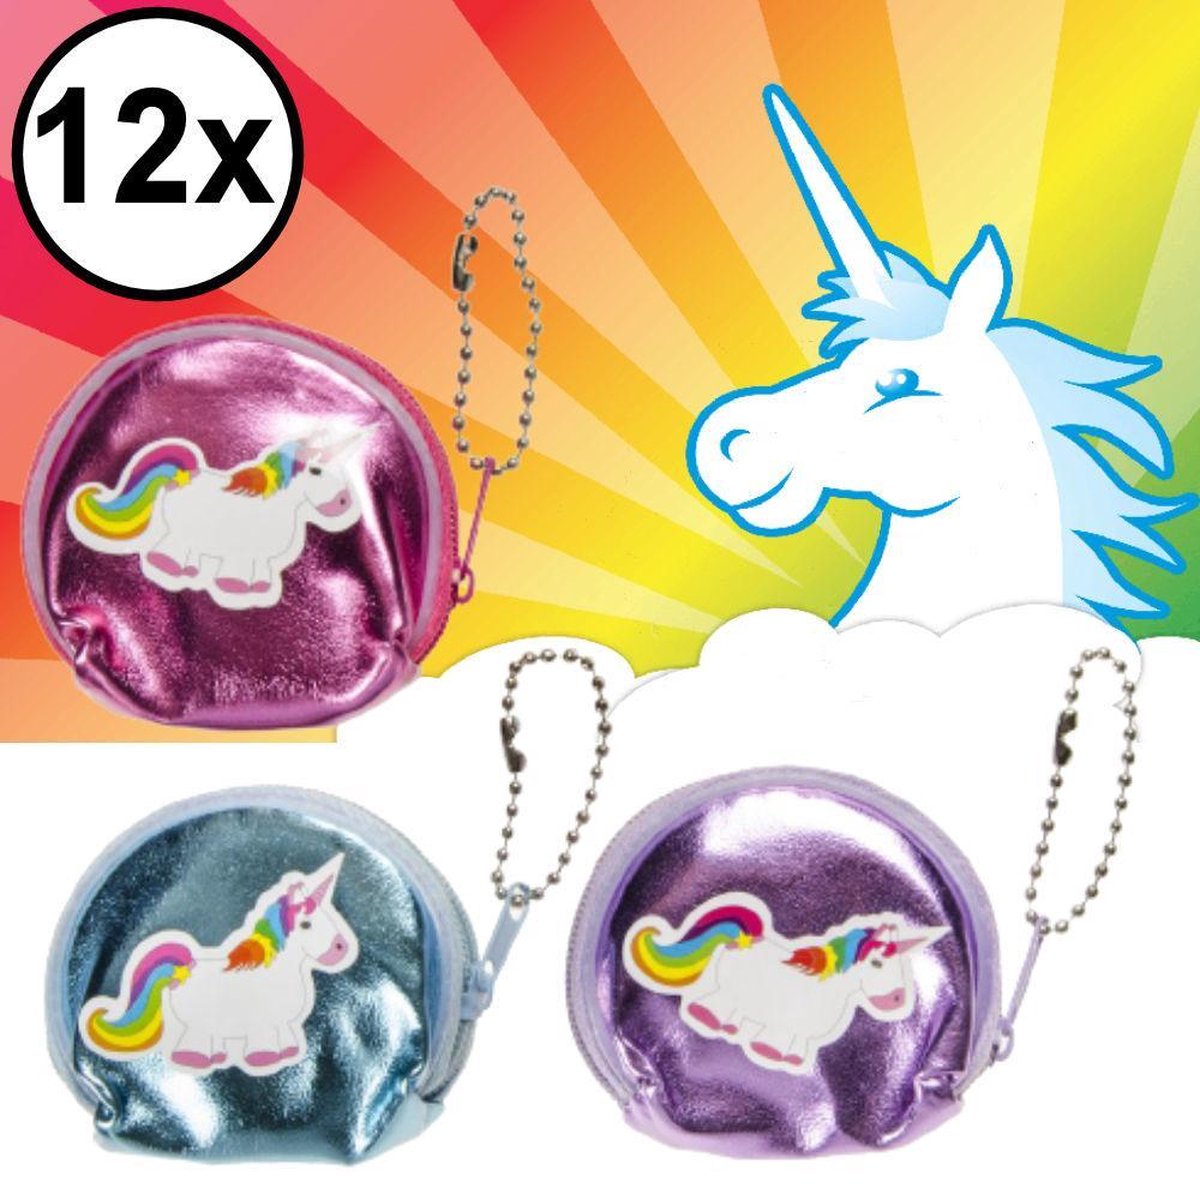 Decopatent® Uitdeelcadeaus 12 STUKS Mini Unicorn / Eenhoorn Portemonees - Traktatie Uitdeelcadeautjes voor kinderen - Speelgoed